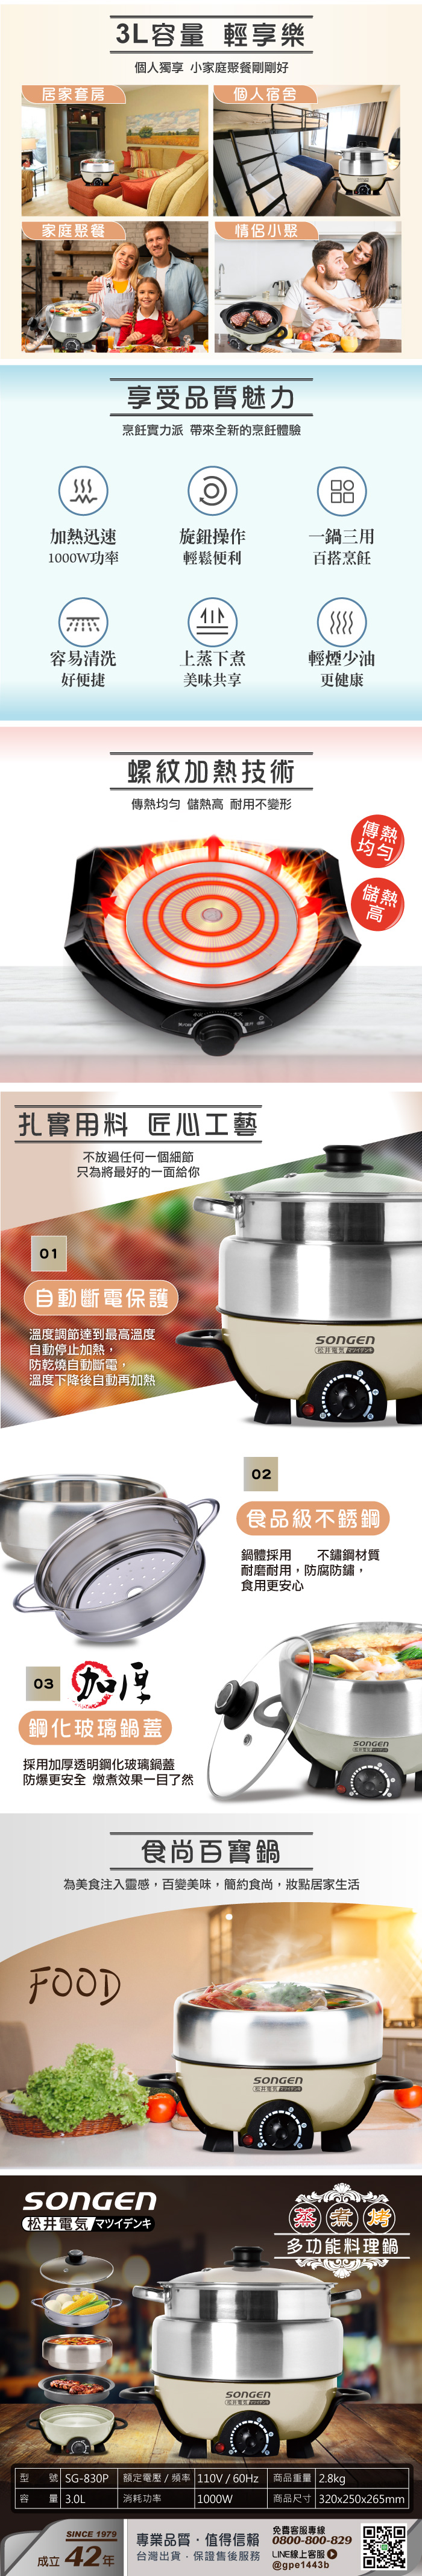 【日本SONGEN】3L不鏽鋼蒸煮烤多功能料理電火鍋(SG-830P)